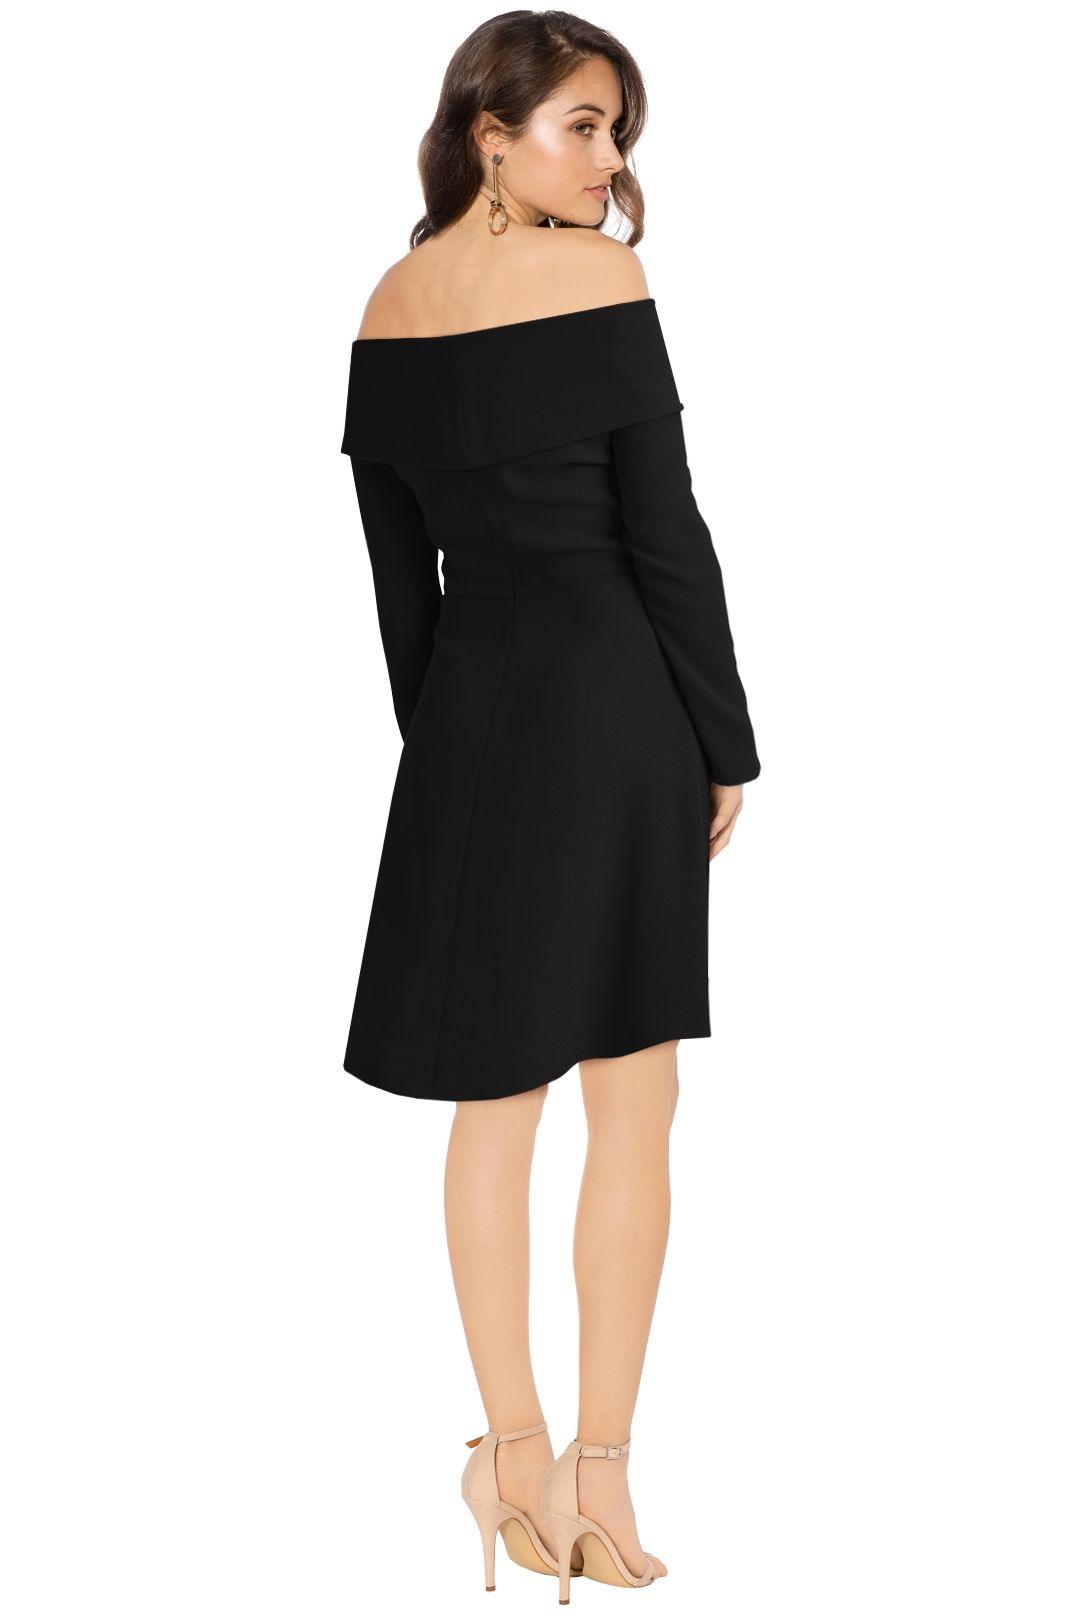 Theory - Elegant Mini Dress Black - Back